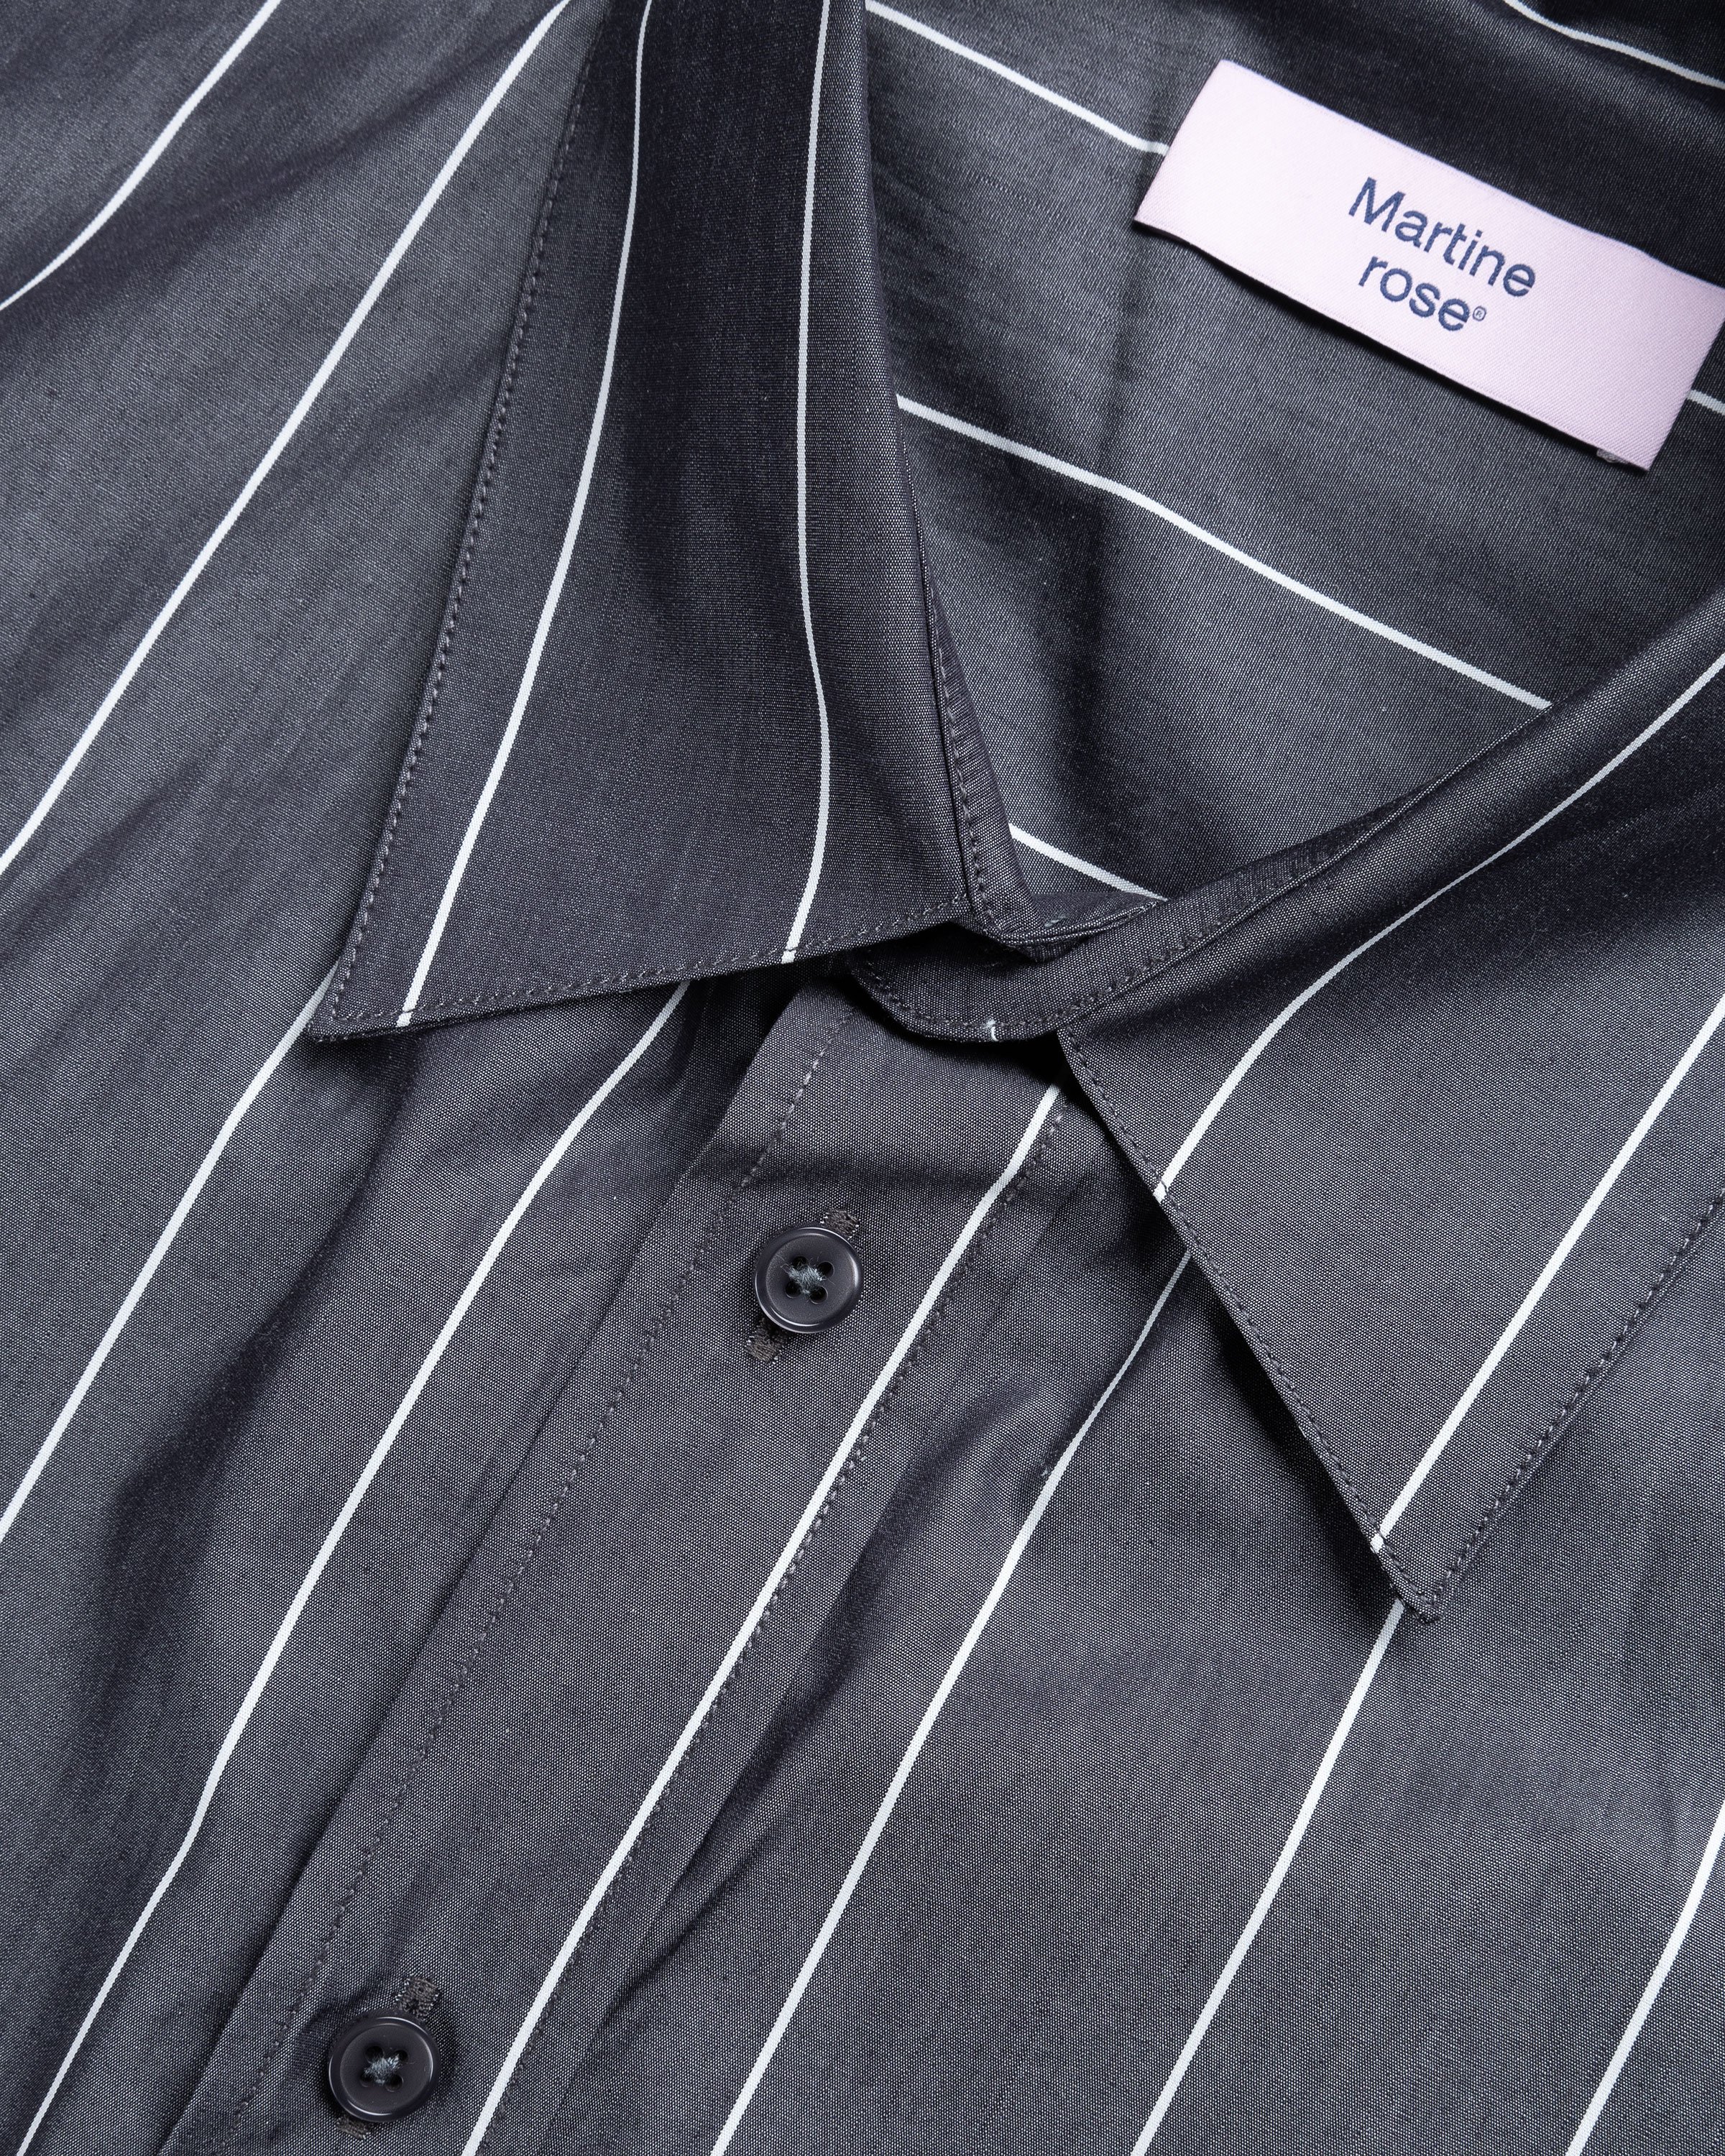 Martine Rose - Pulled Neck Shirt Grey/White - Clothing - Grey - Image 6